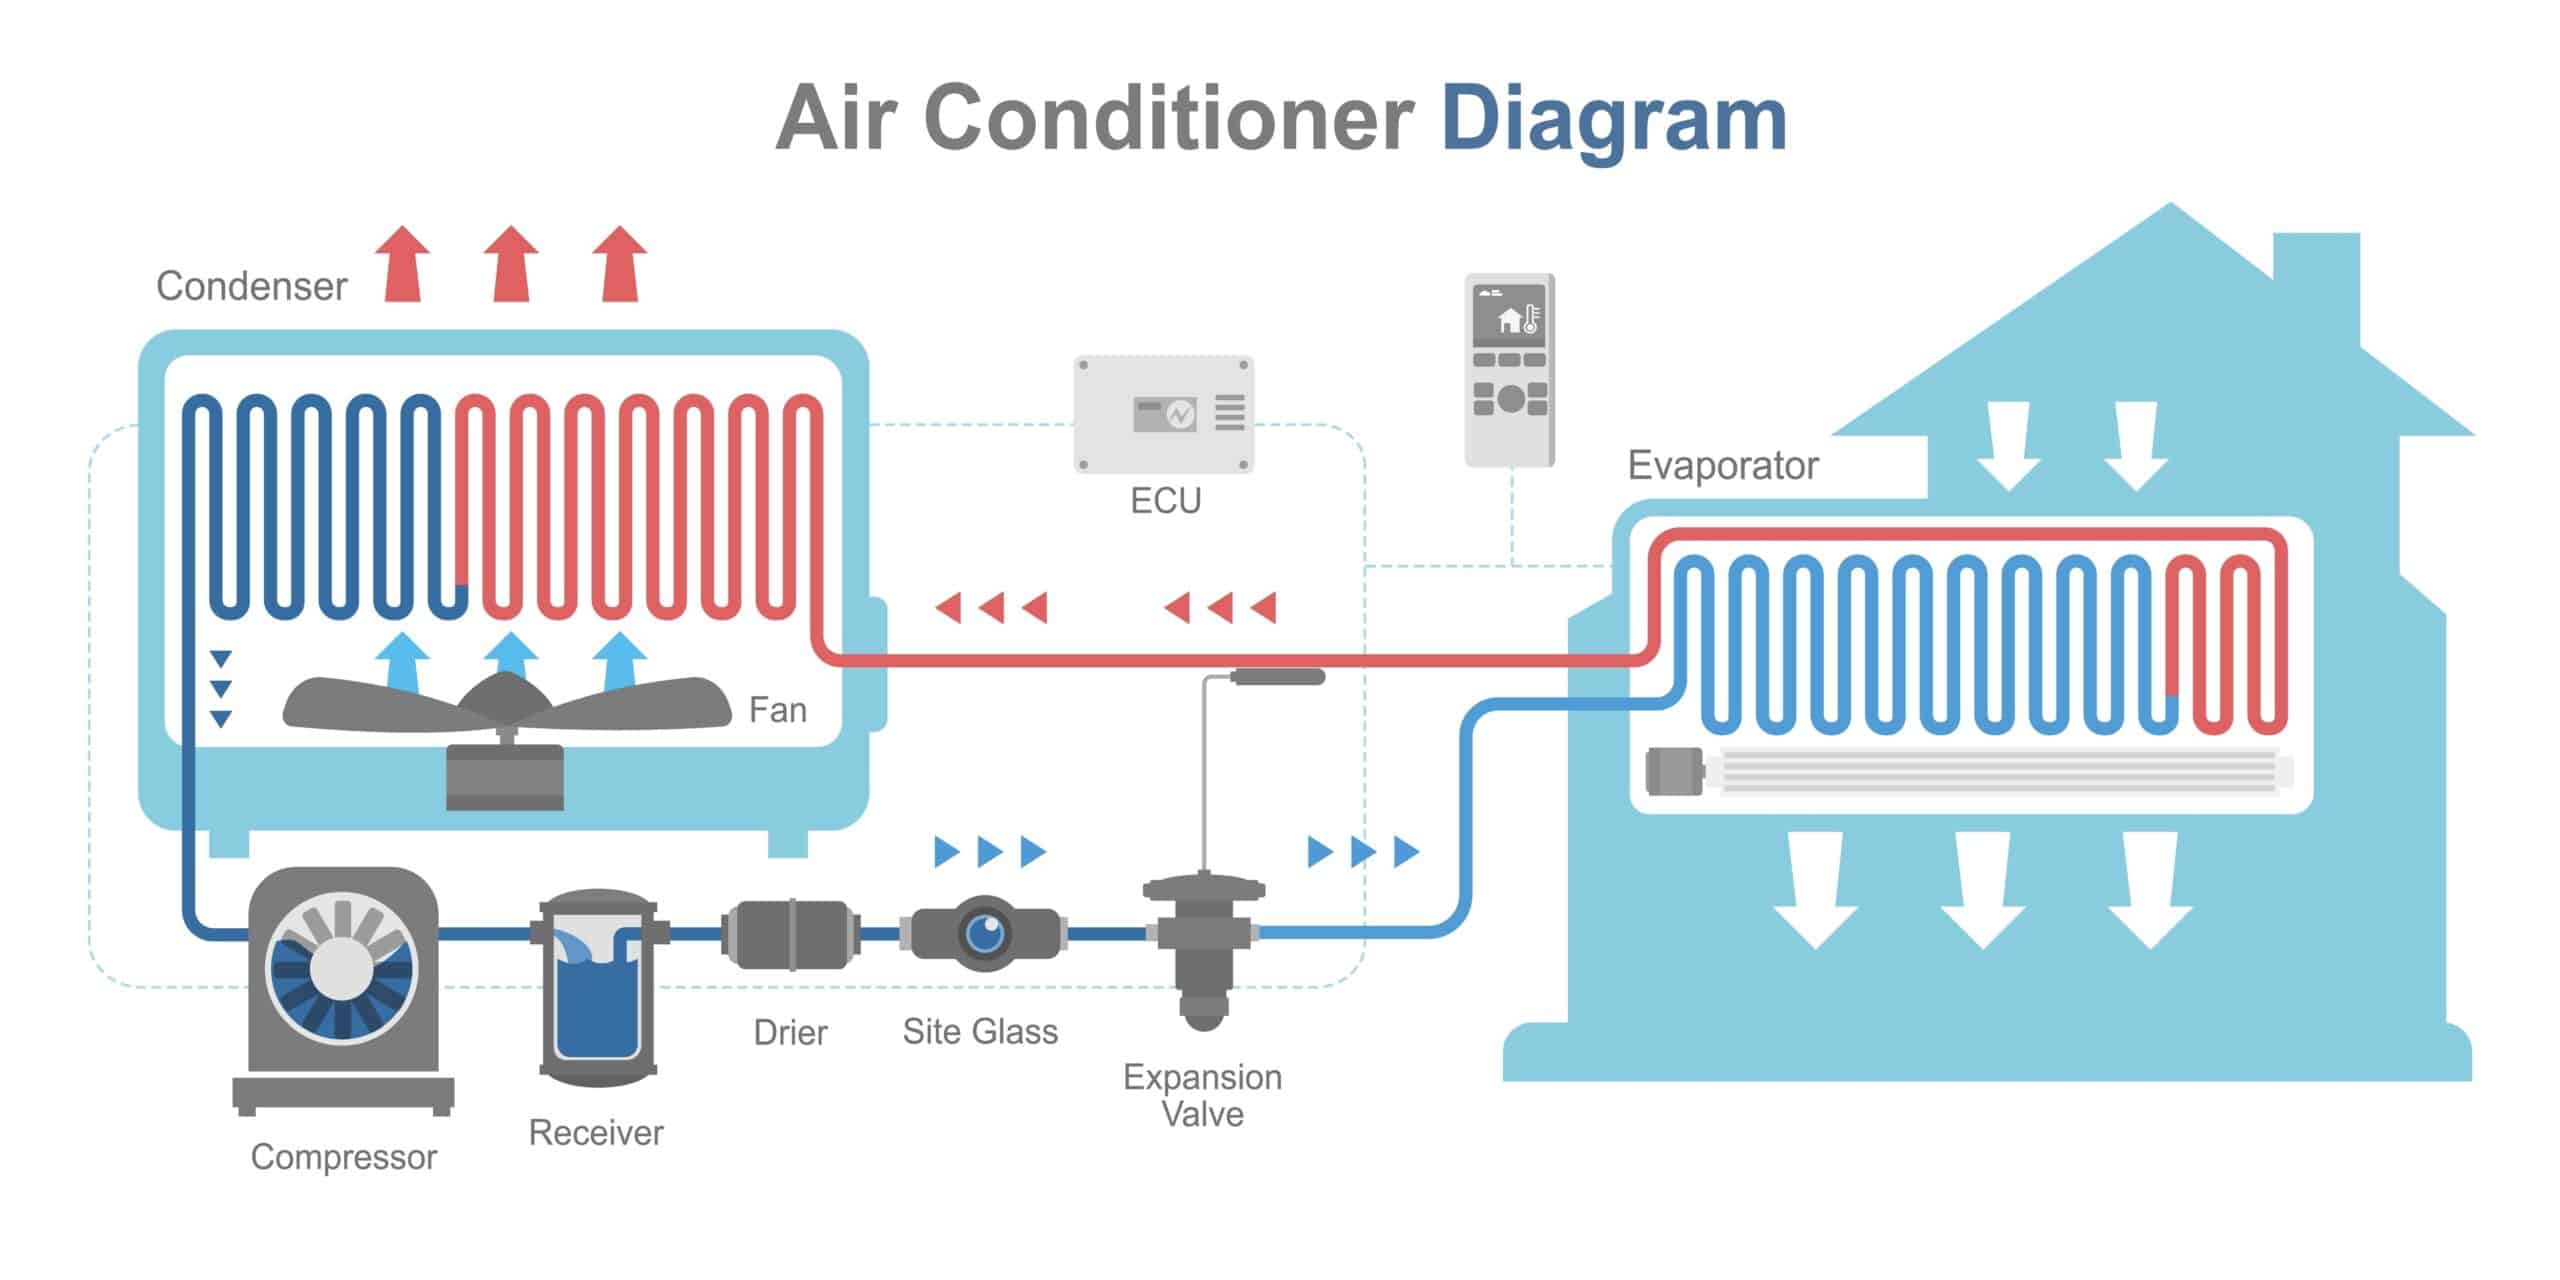 Air Conditioner Diagram 